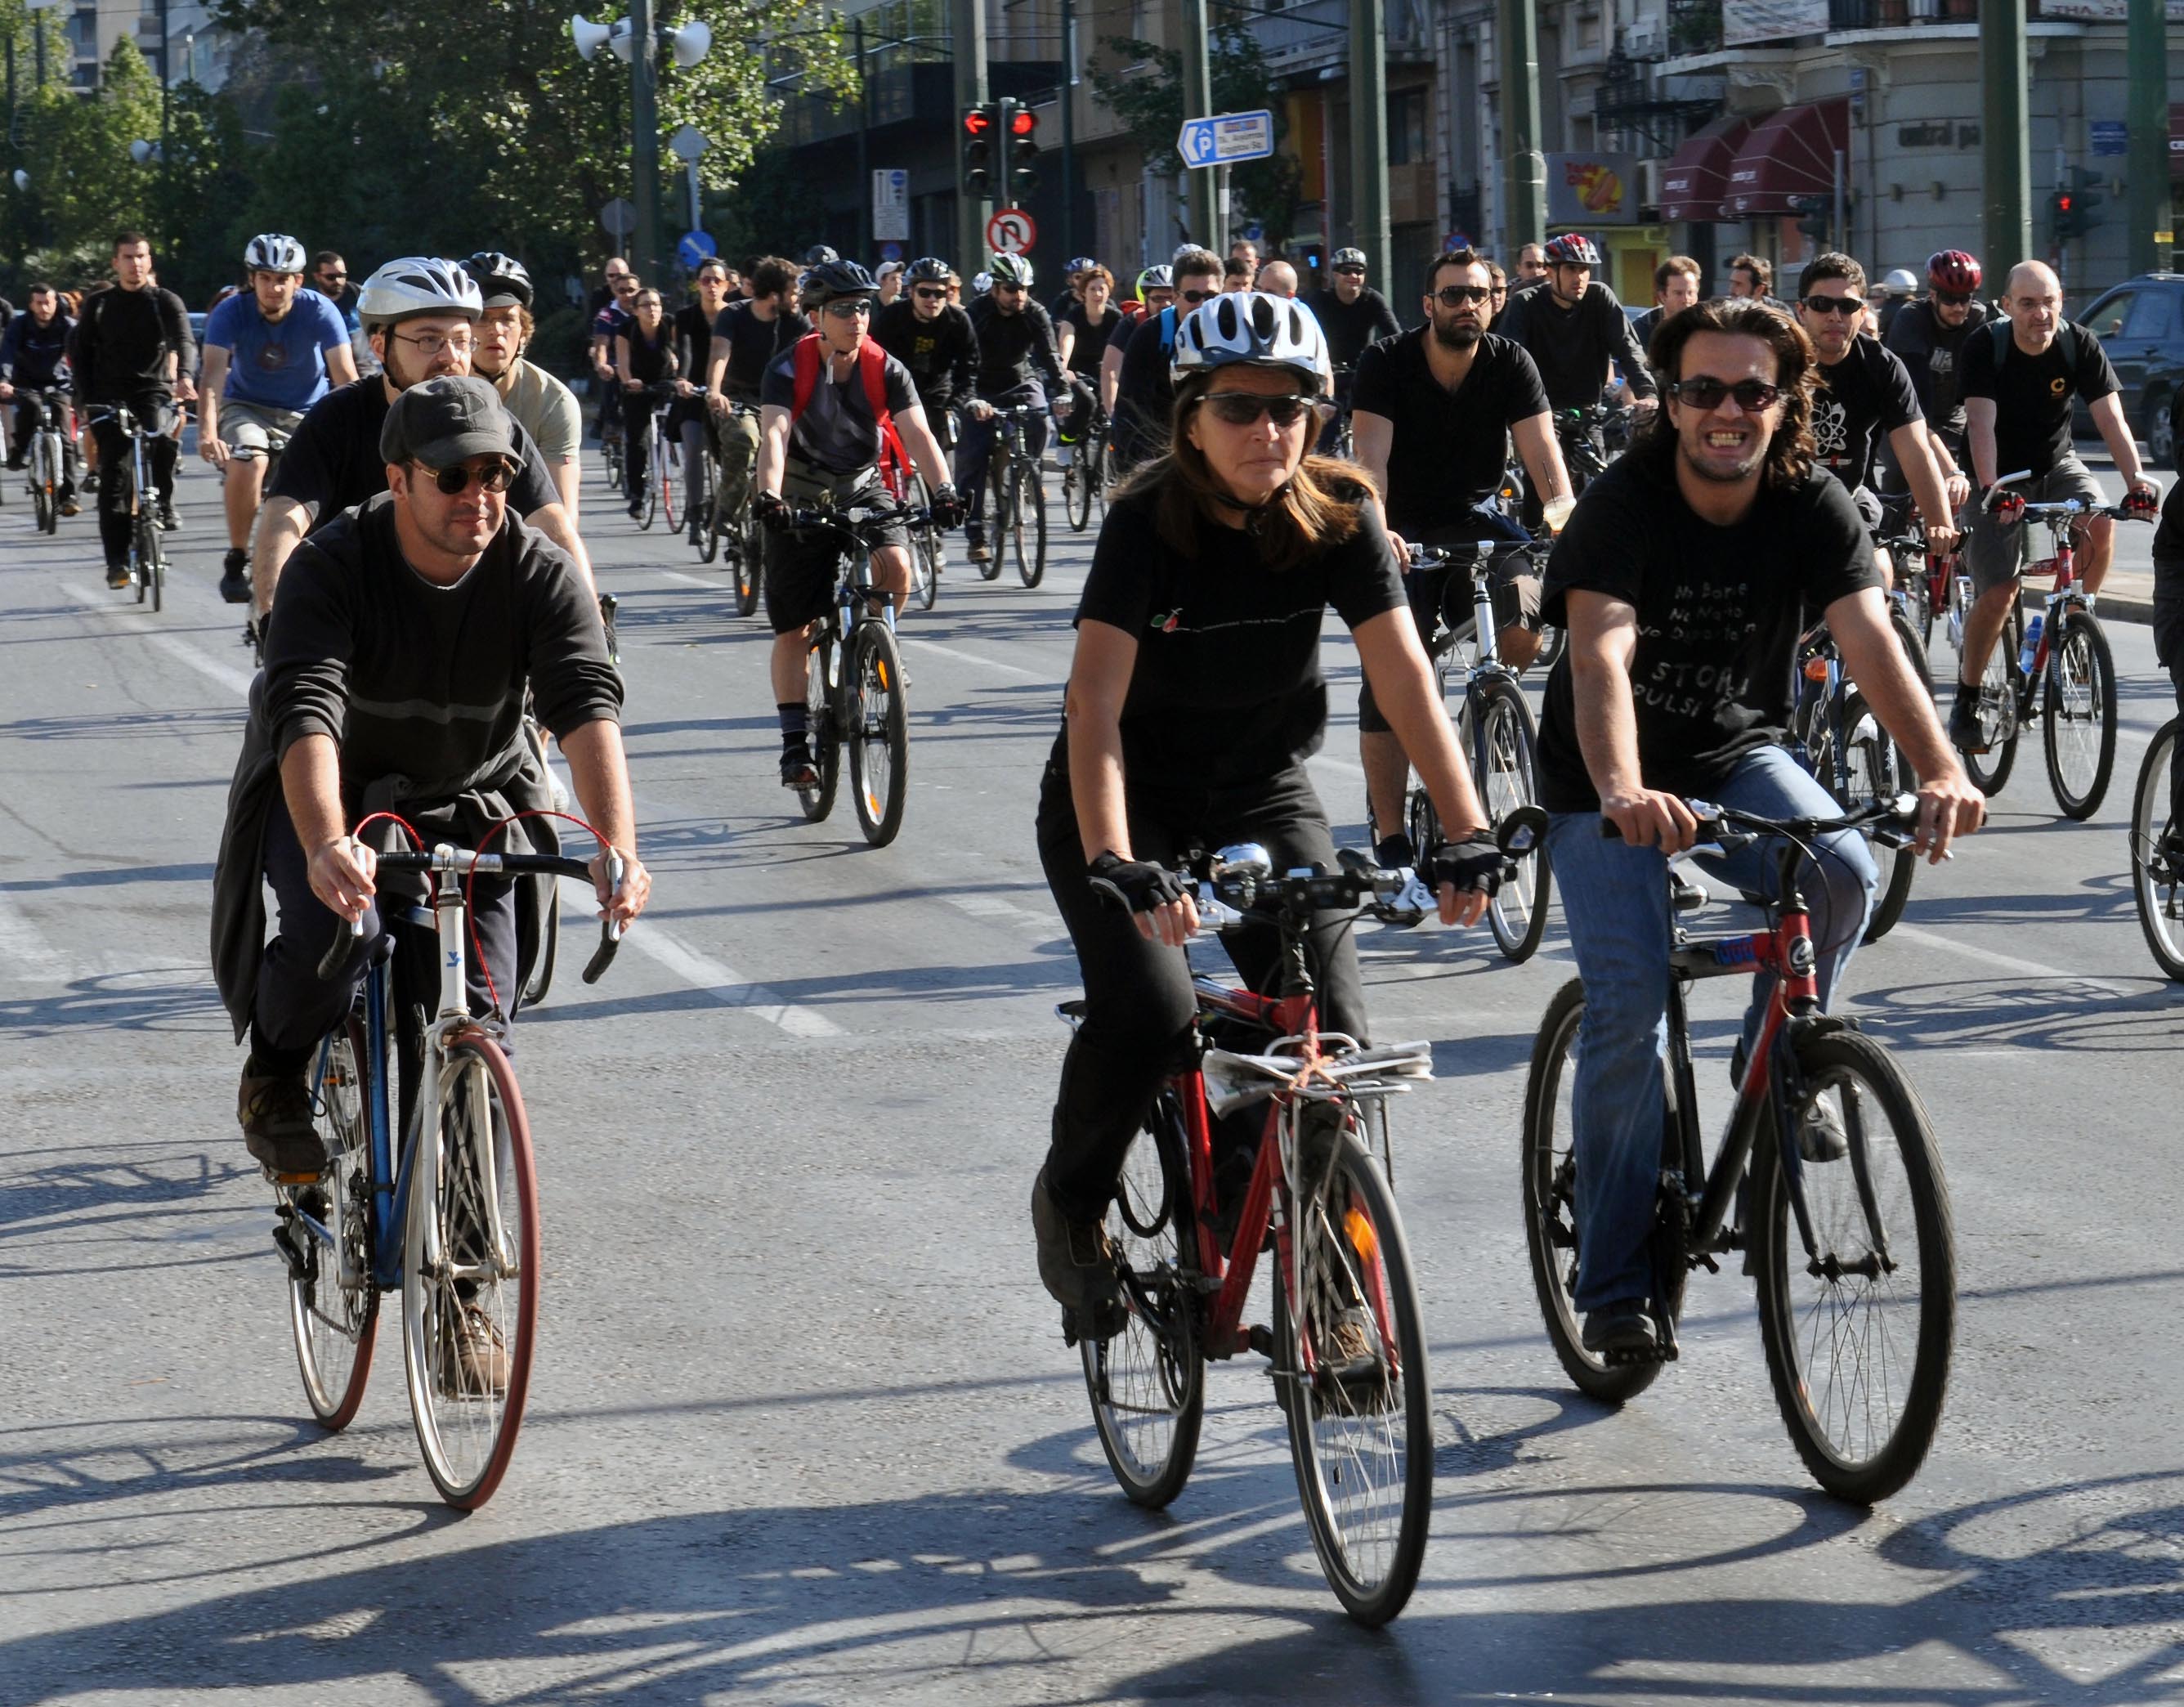 Σύστημα κοινόχρηστων ποδηλάτων προωθεί ο δήμος Αθηναίων